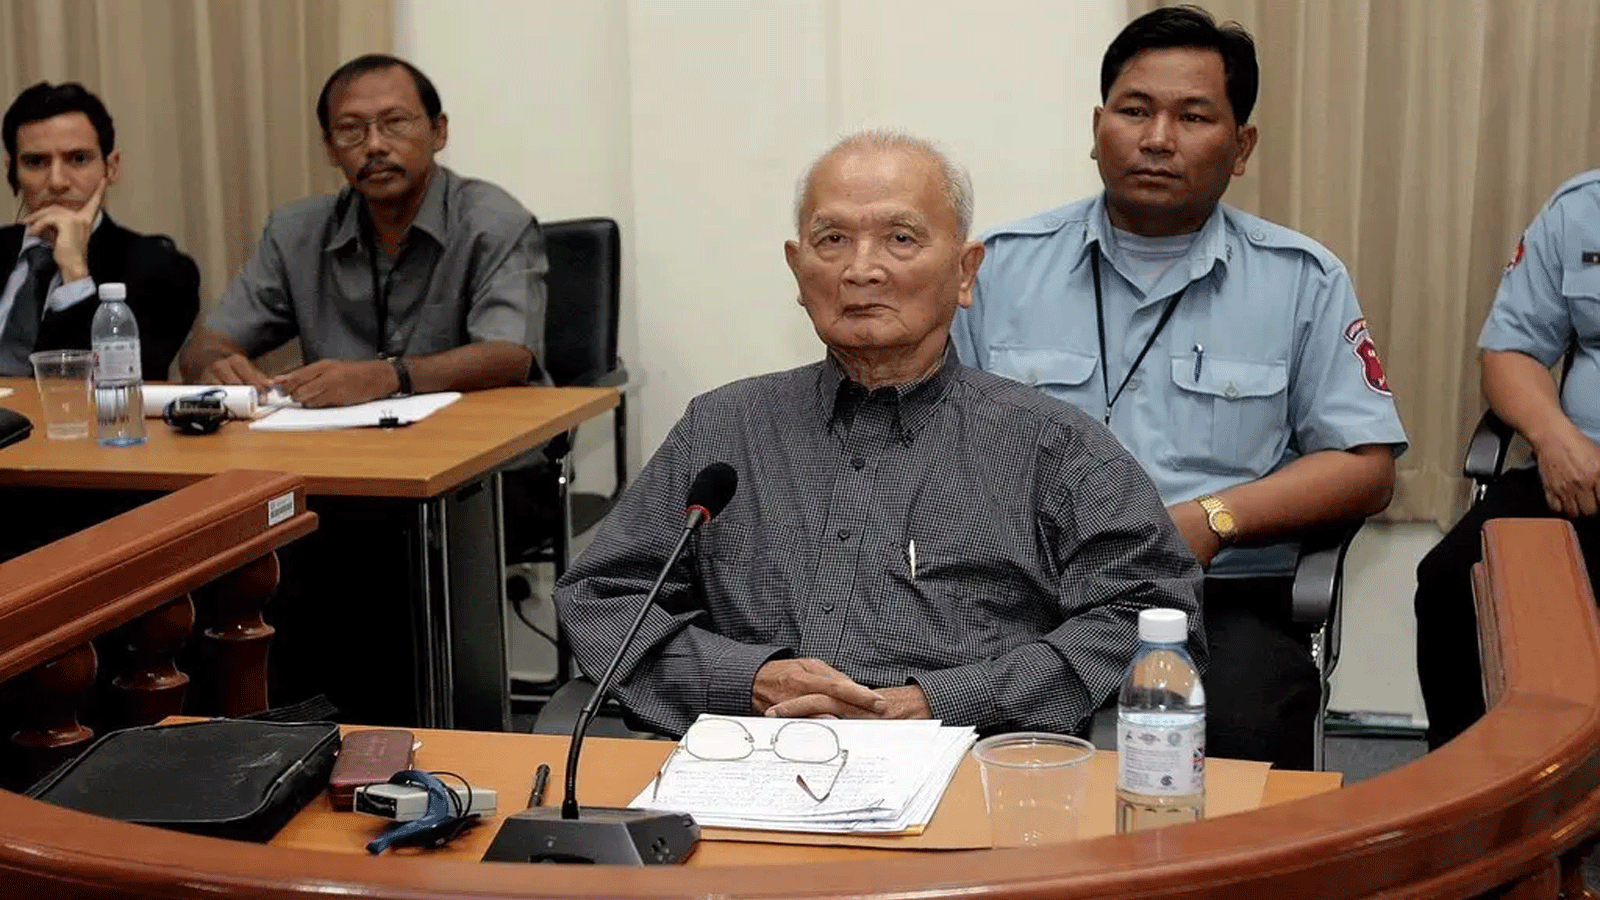 زعيم الخمير الحمر السابق نون تشيا، الذي كان ثانيًا في القيادة بعد بول بوت، في محكمة في بنوم بنه، كمبوديا، في العام 2008.